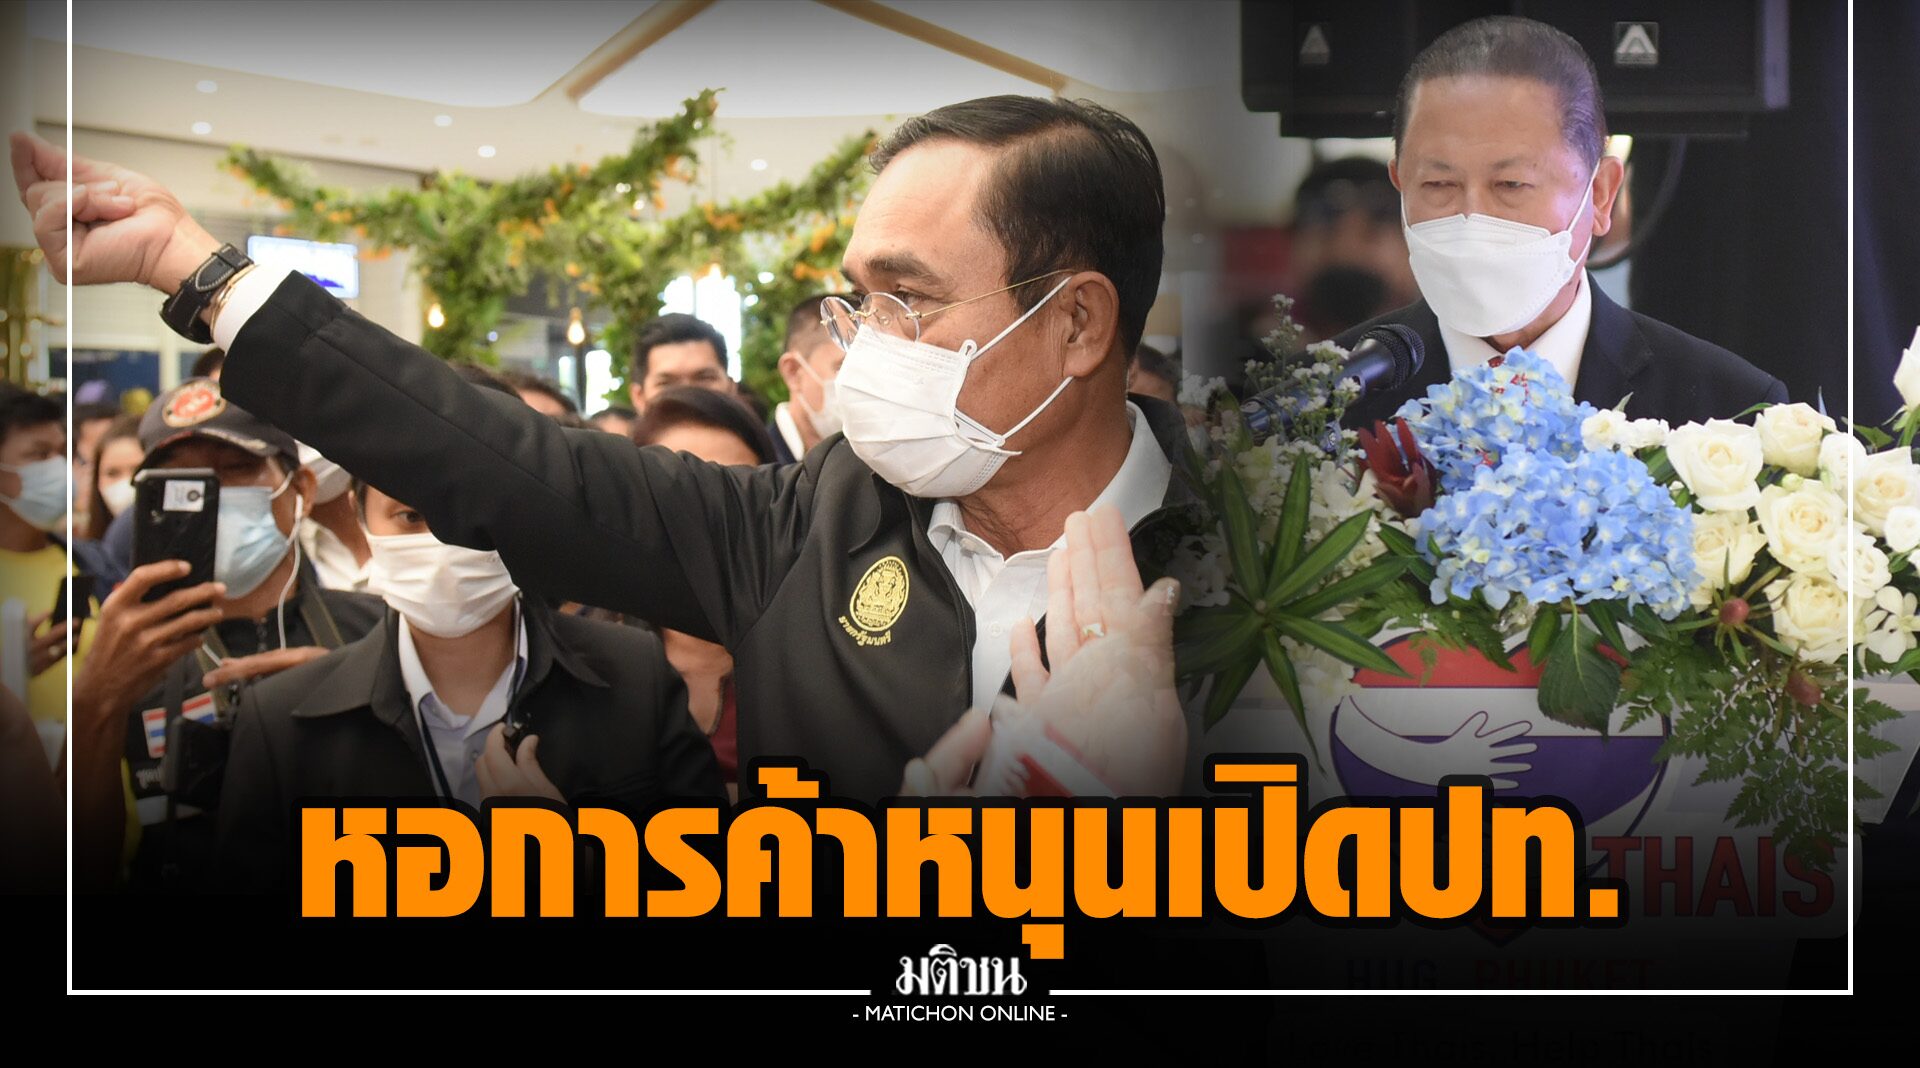 หอค้าไทย ยกทัพเปิดฮักภูเก็ต หนุน 120 วันเปิดประเทศ ชี้ 3 เดือน โกยรายได้ท่องเที่ยว 1.2 หมื่นล.